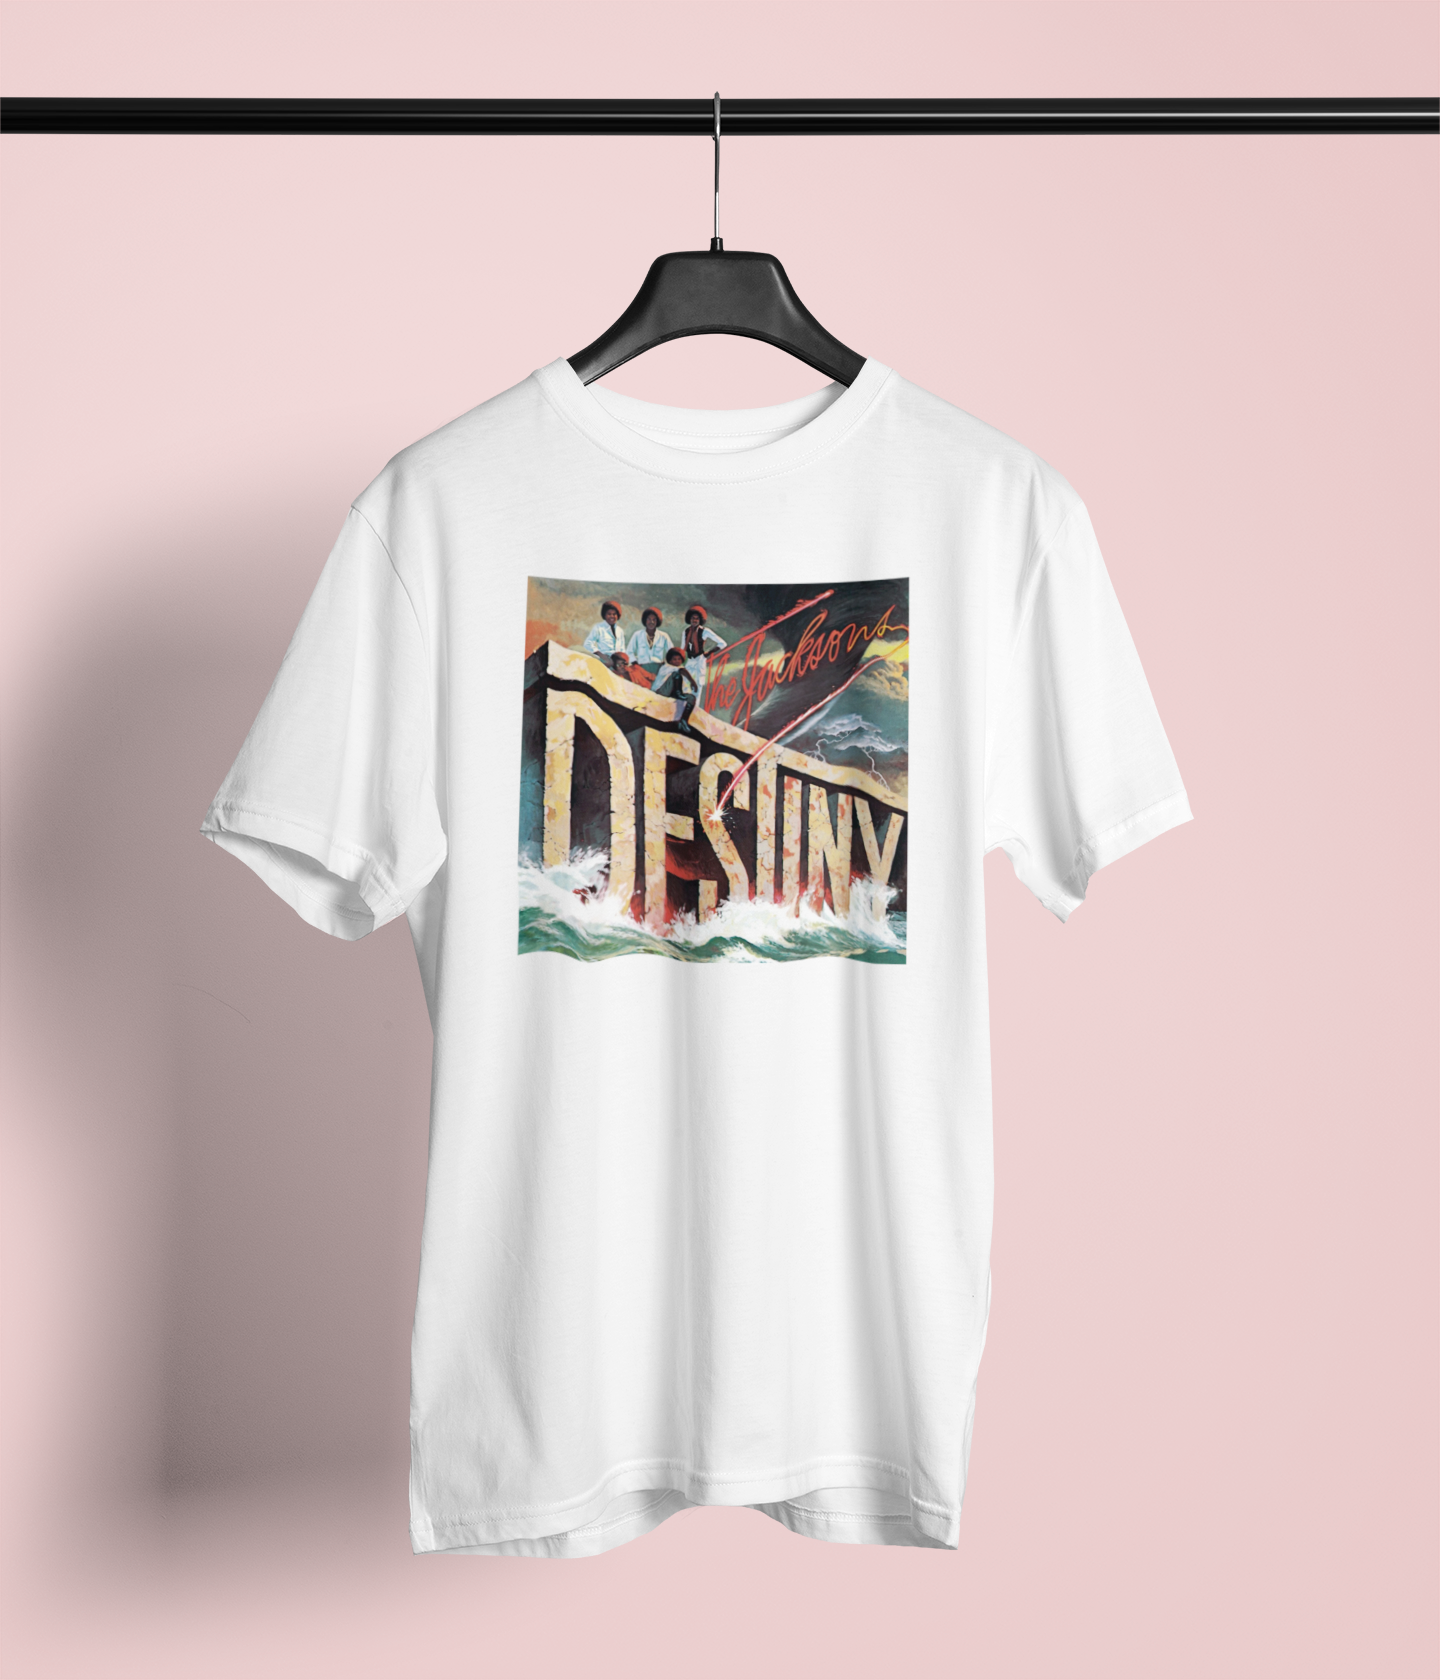 Camiseta "Destiny - The Jacksons" - Álbum - Música